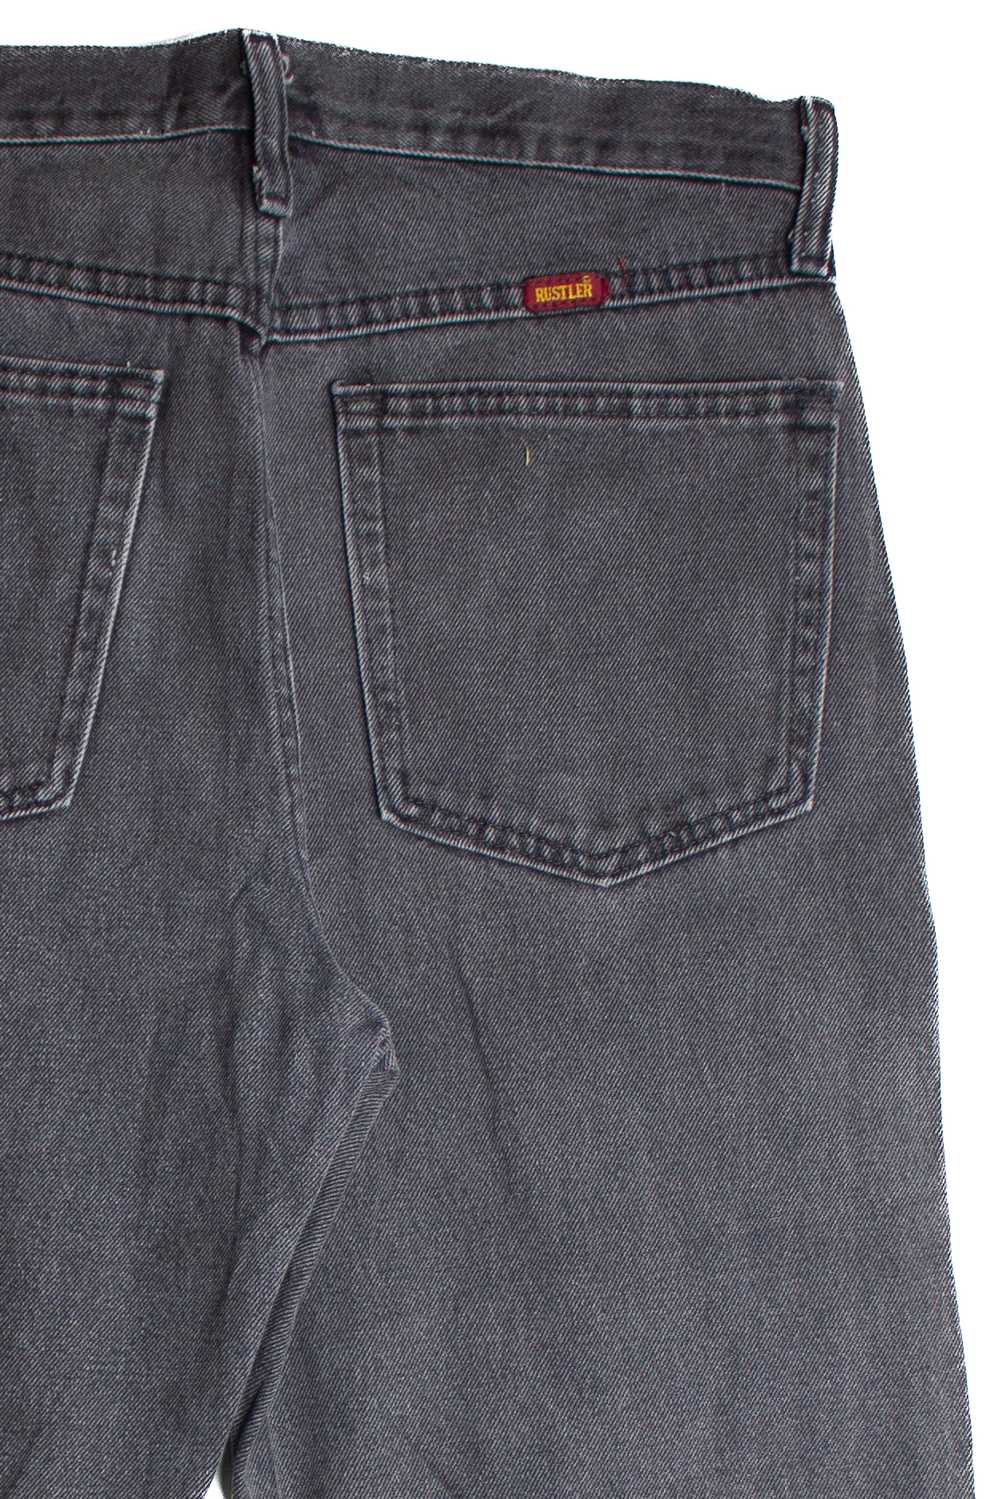 Vintage Rustler Denim Jeans (1990s) 1013 - image 4